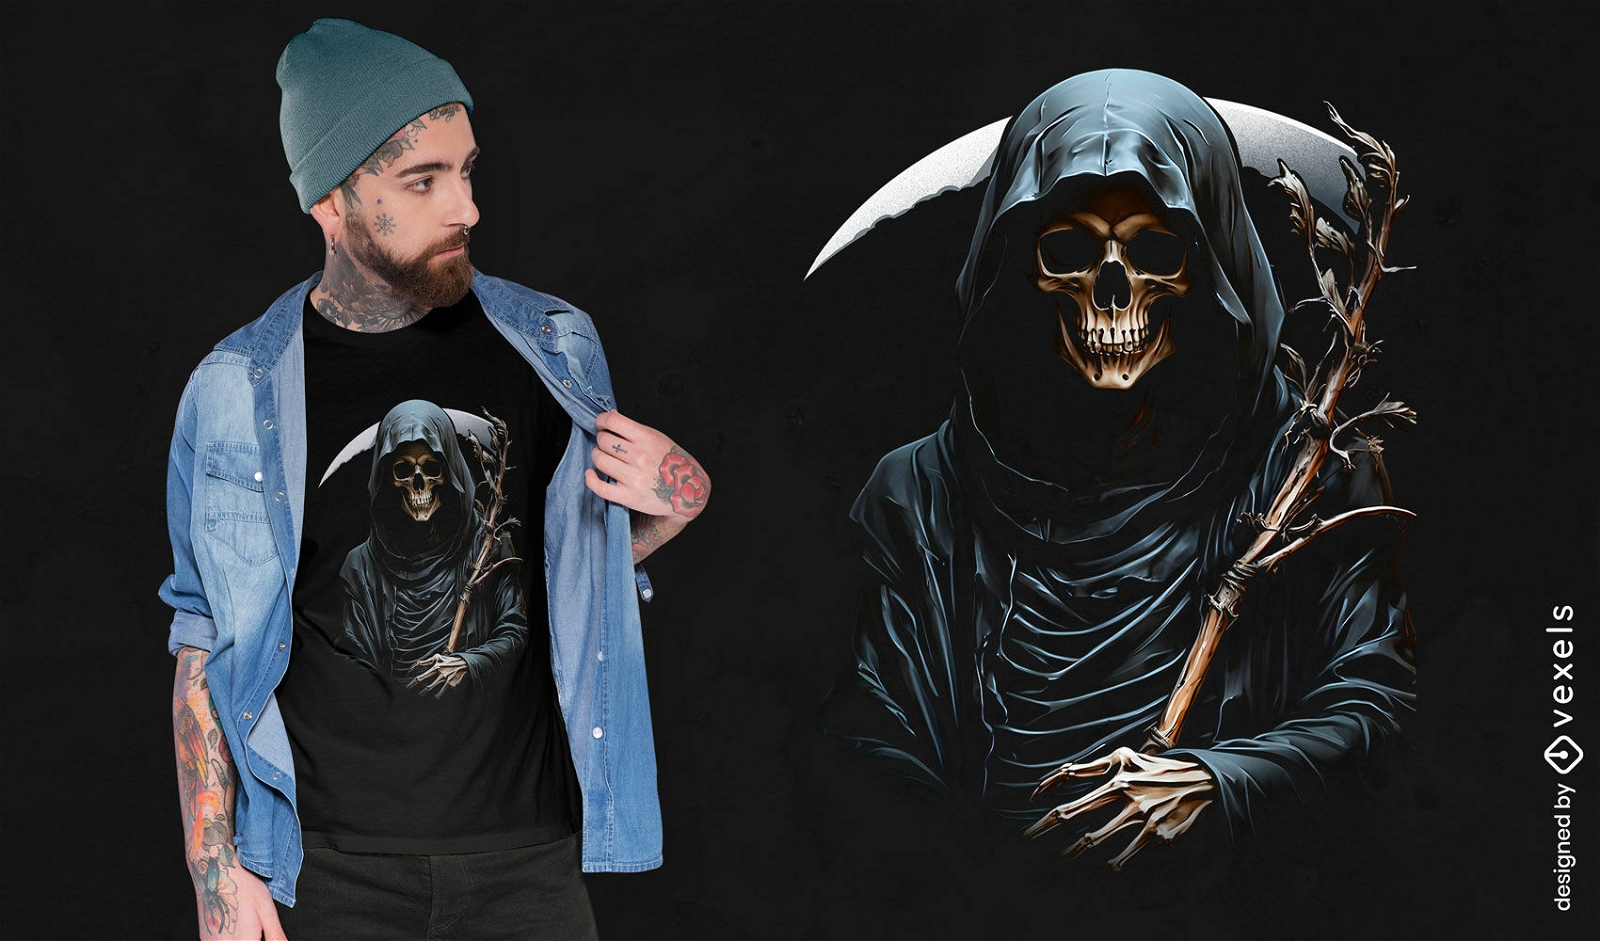 Gothic grim reaper t-shirt design